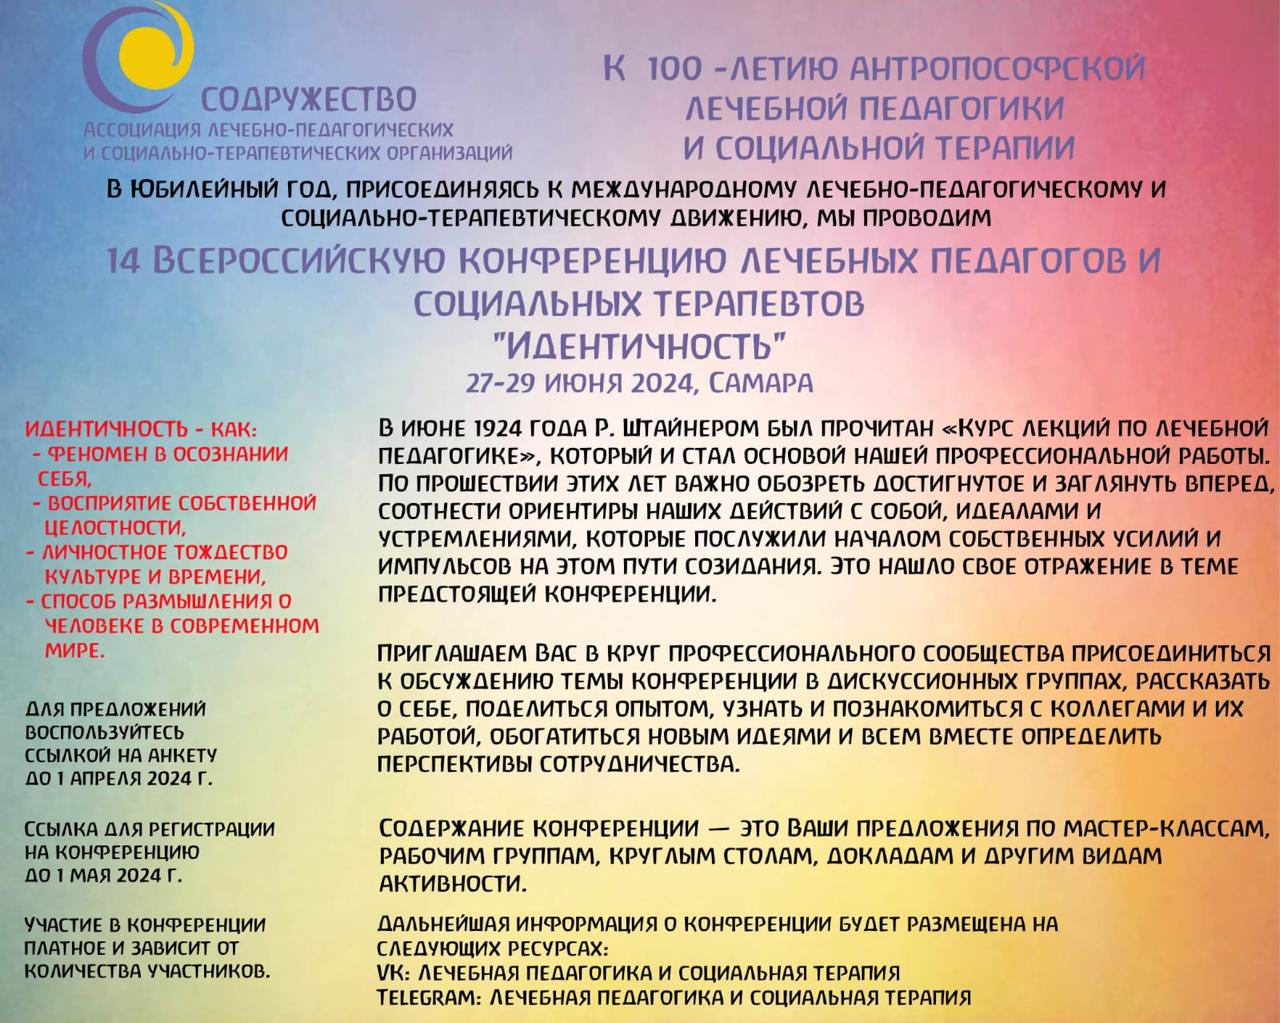 Всероссийская конференция лечебных педагогов и социальных терапевтов, Самара